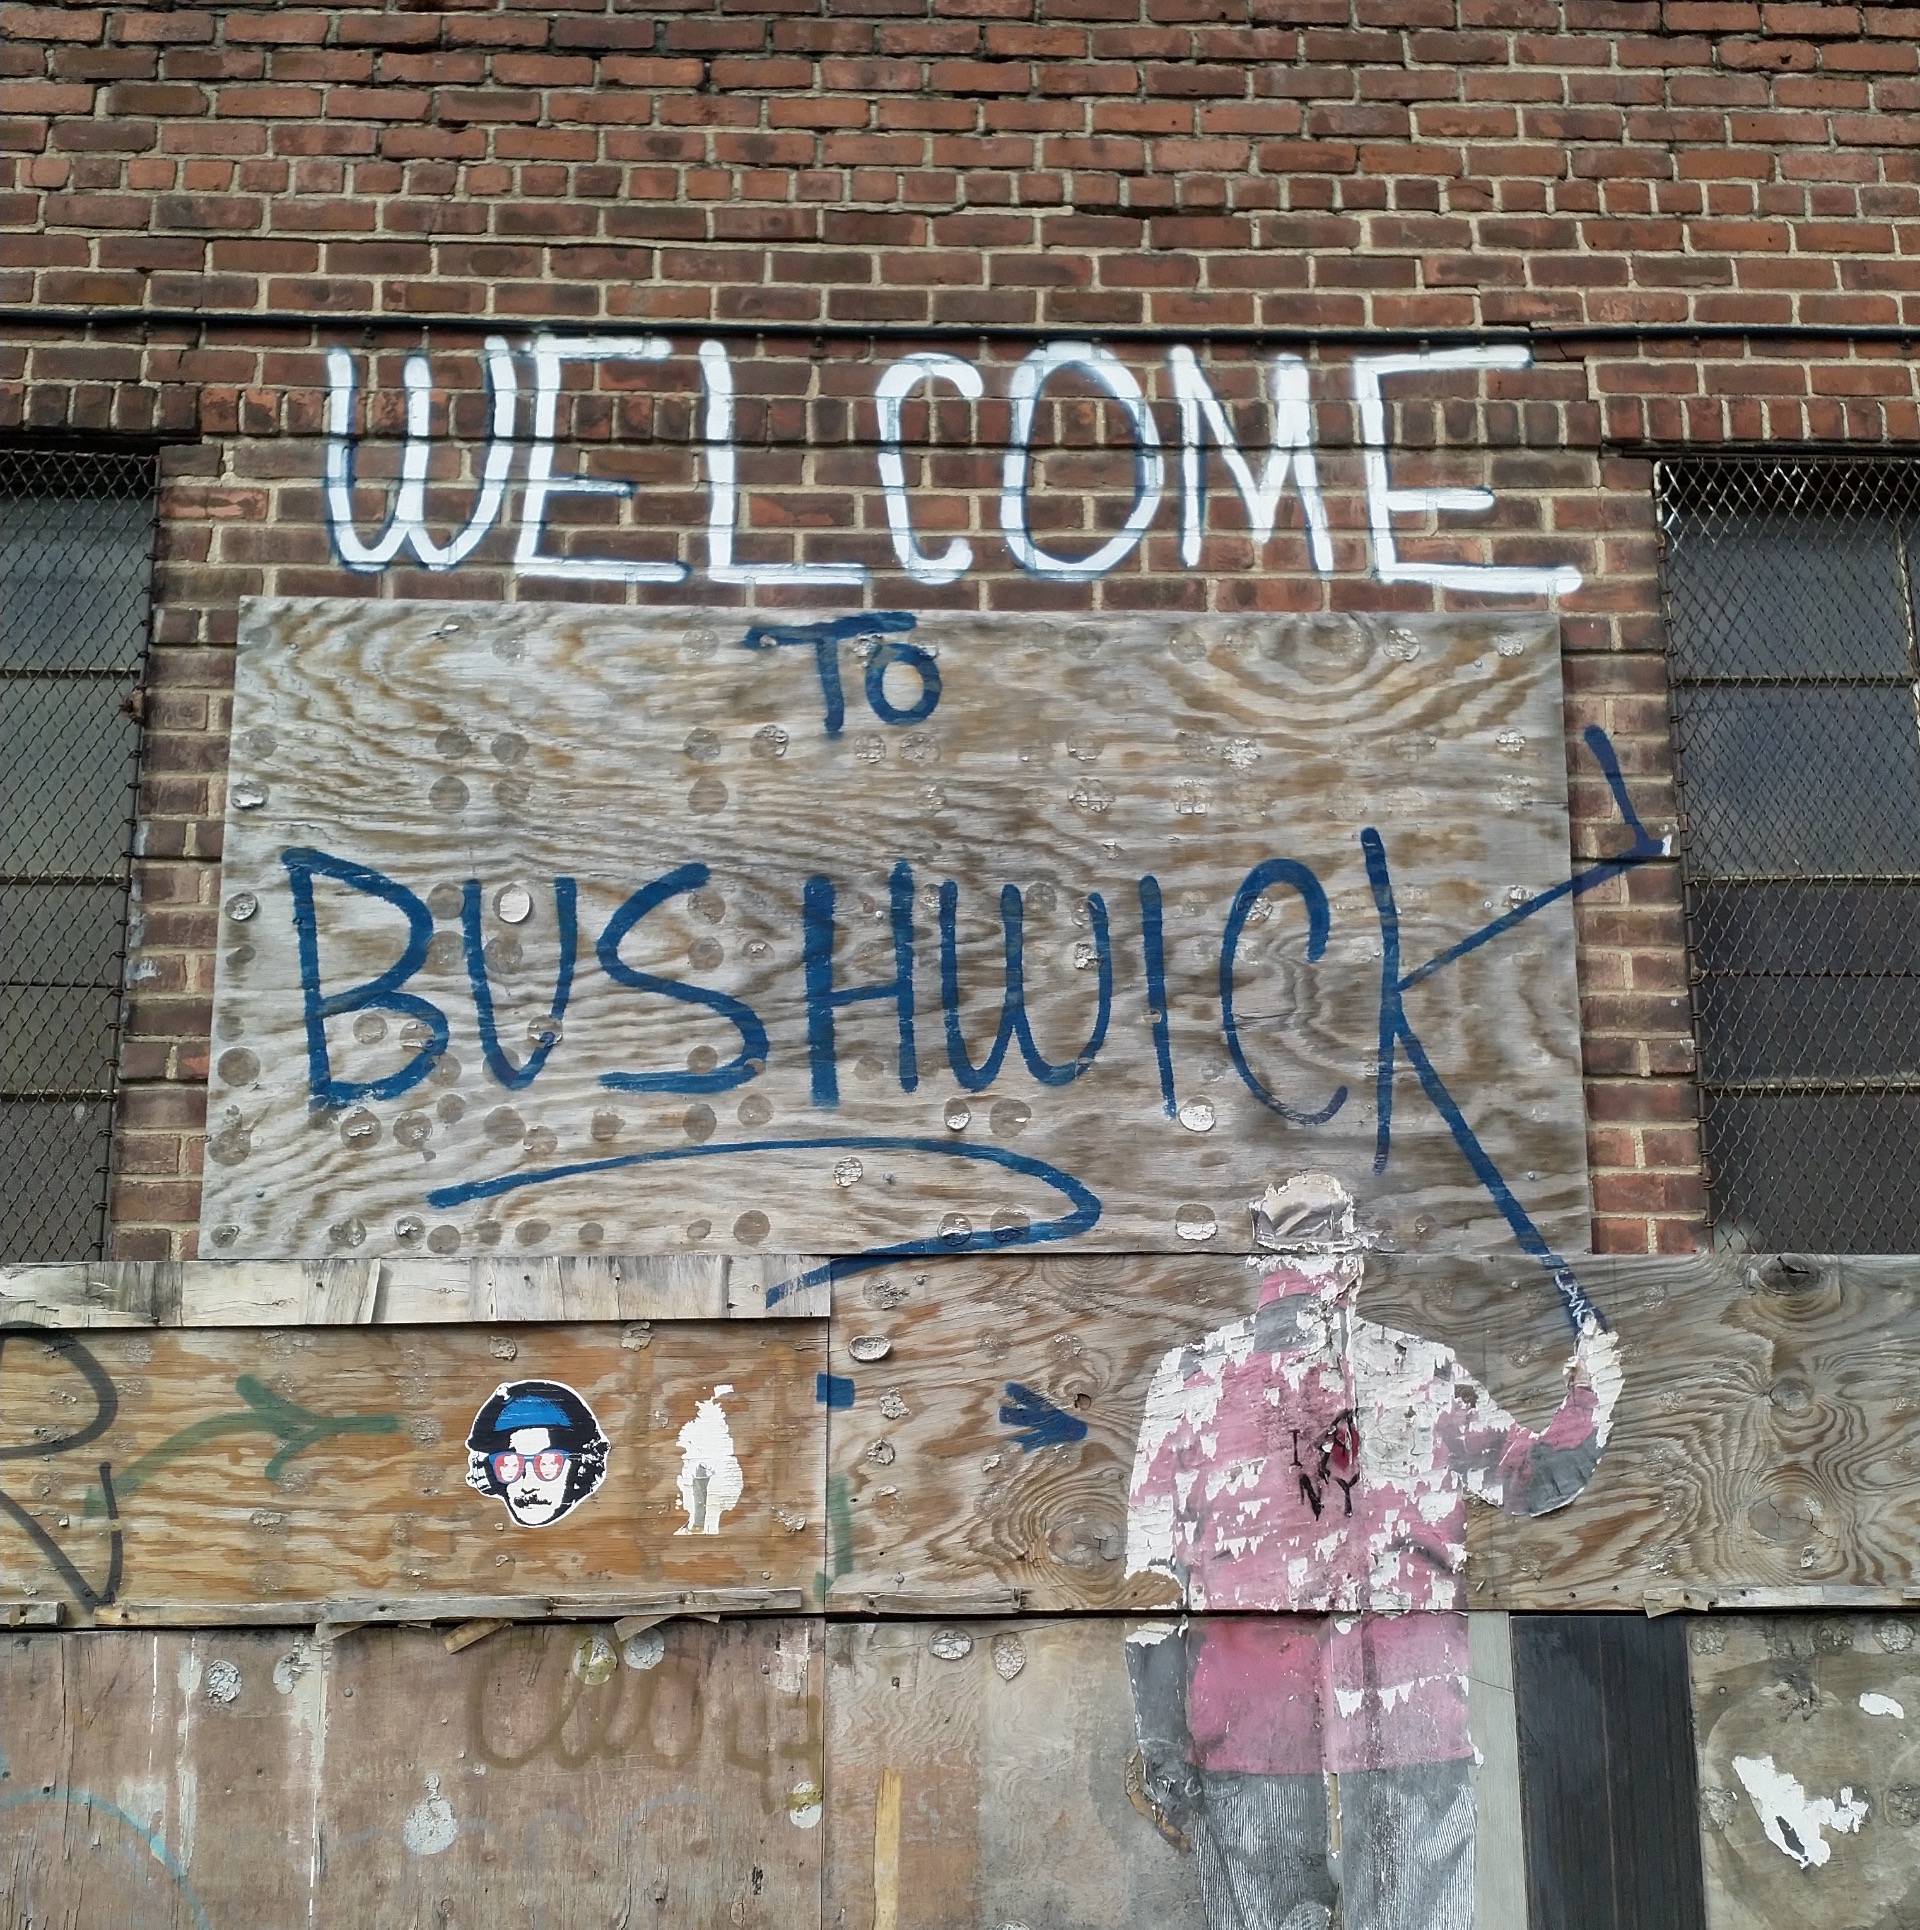 Street Art tour in Bushwick, NY